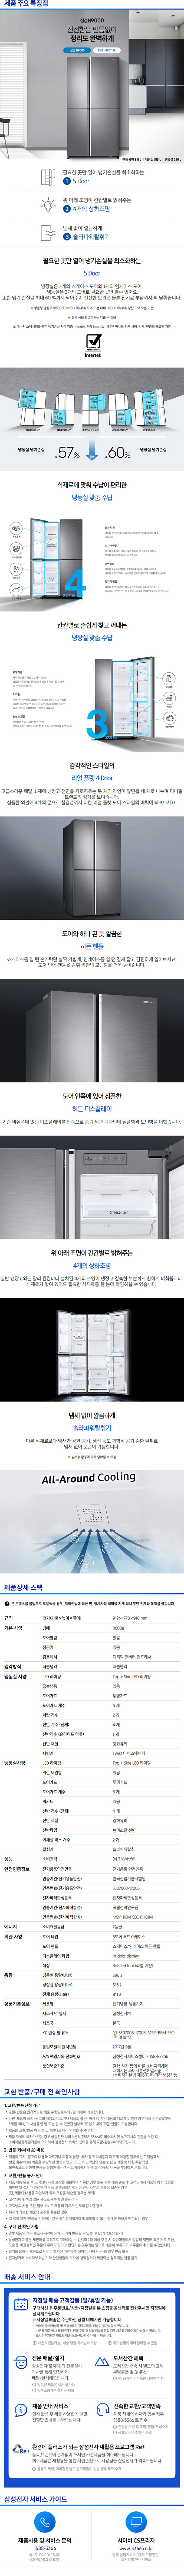 송파케이블 - 삼성 지펠 양문냉장고 (RH81M8011S9) 상세보기